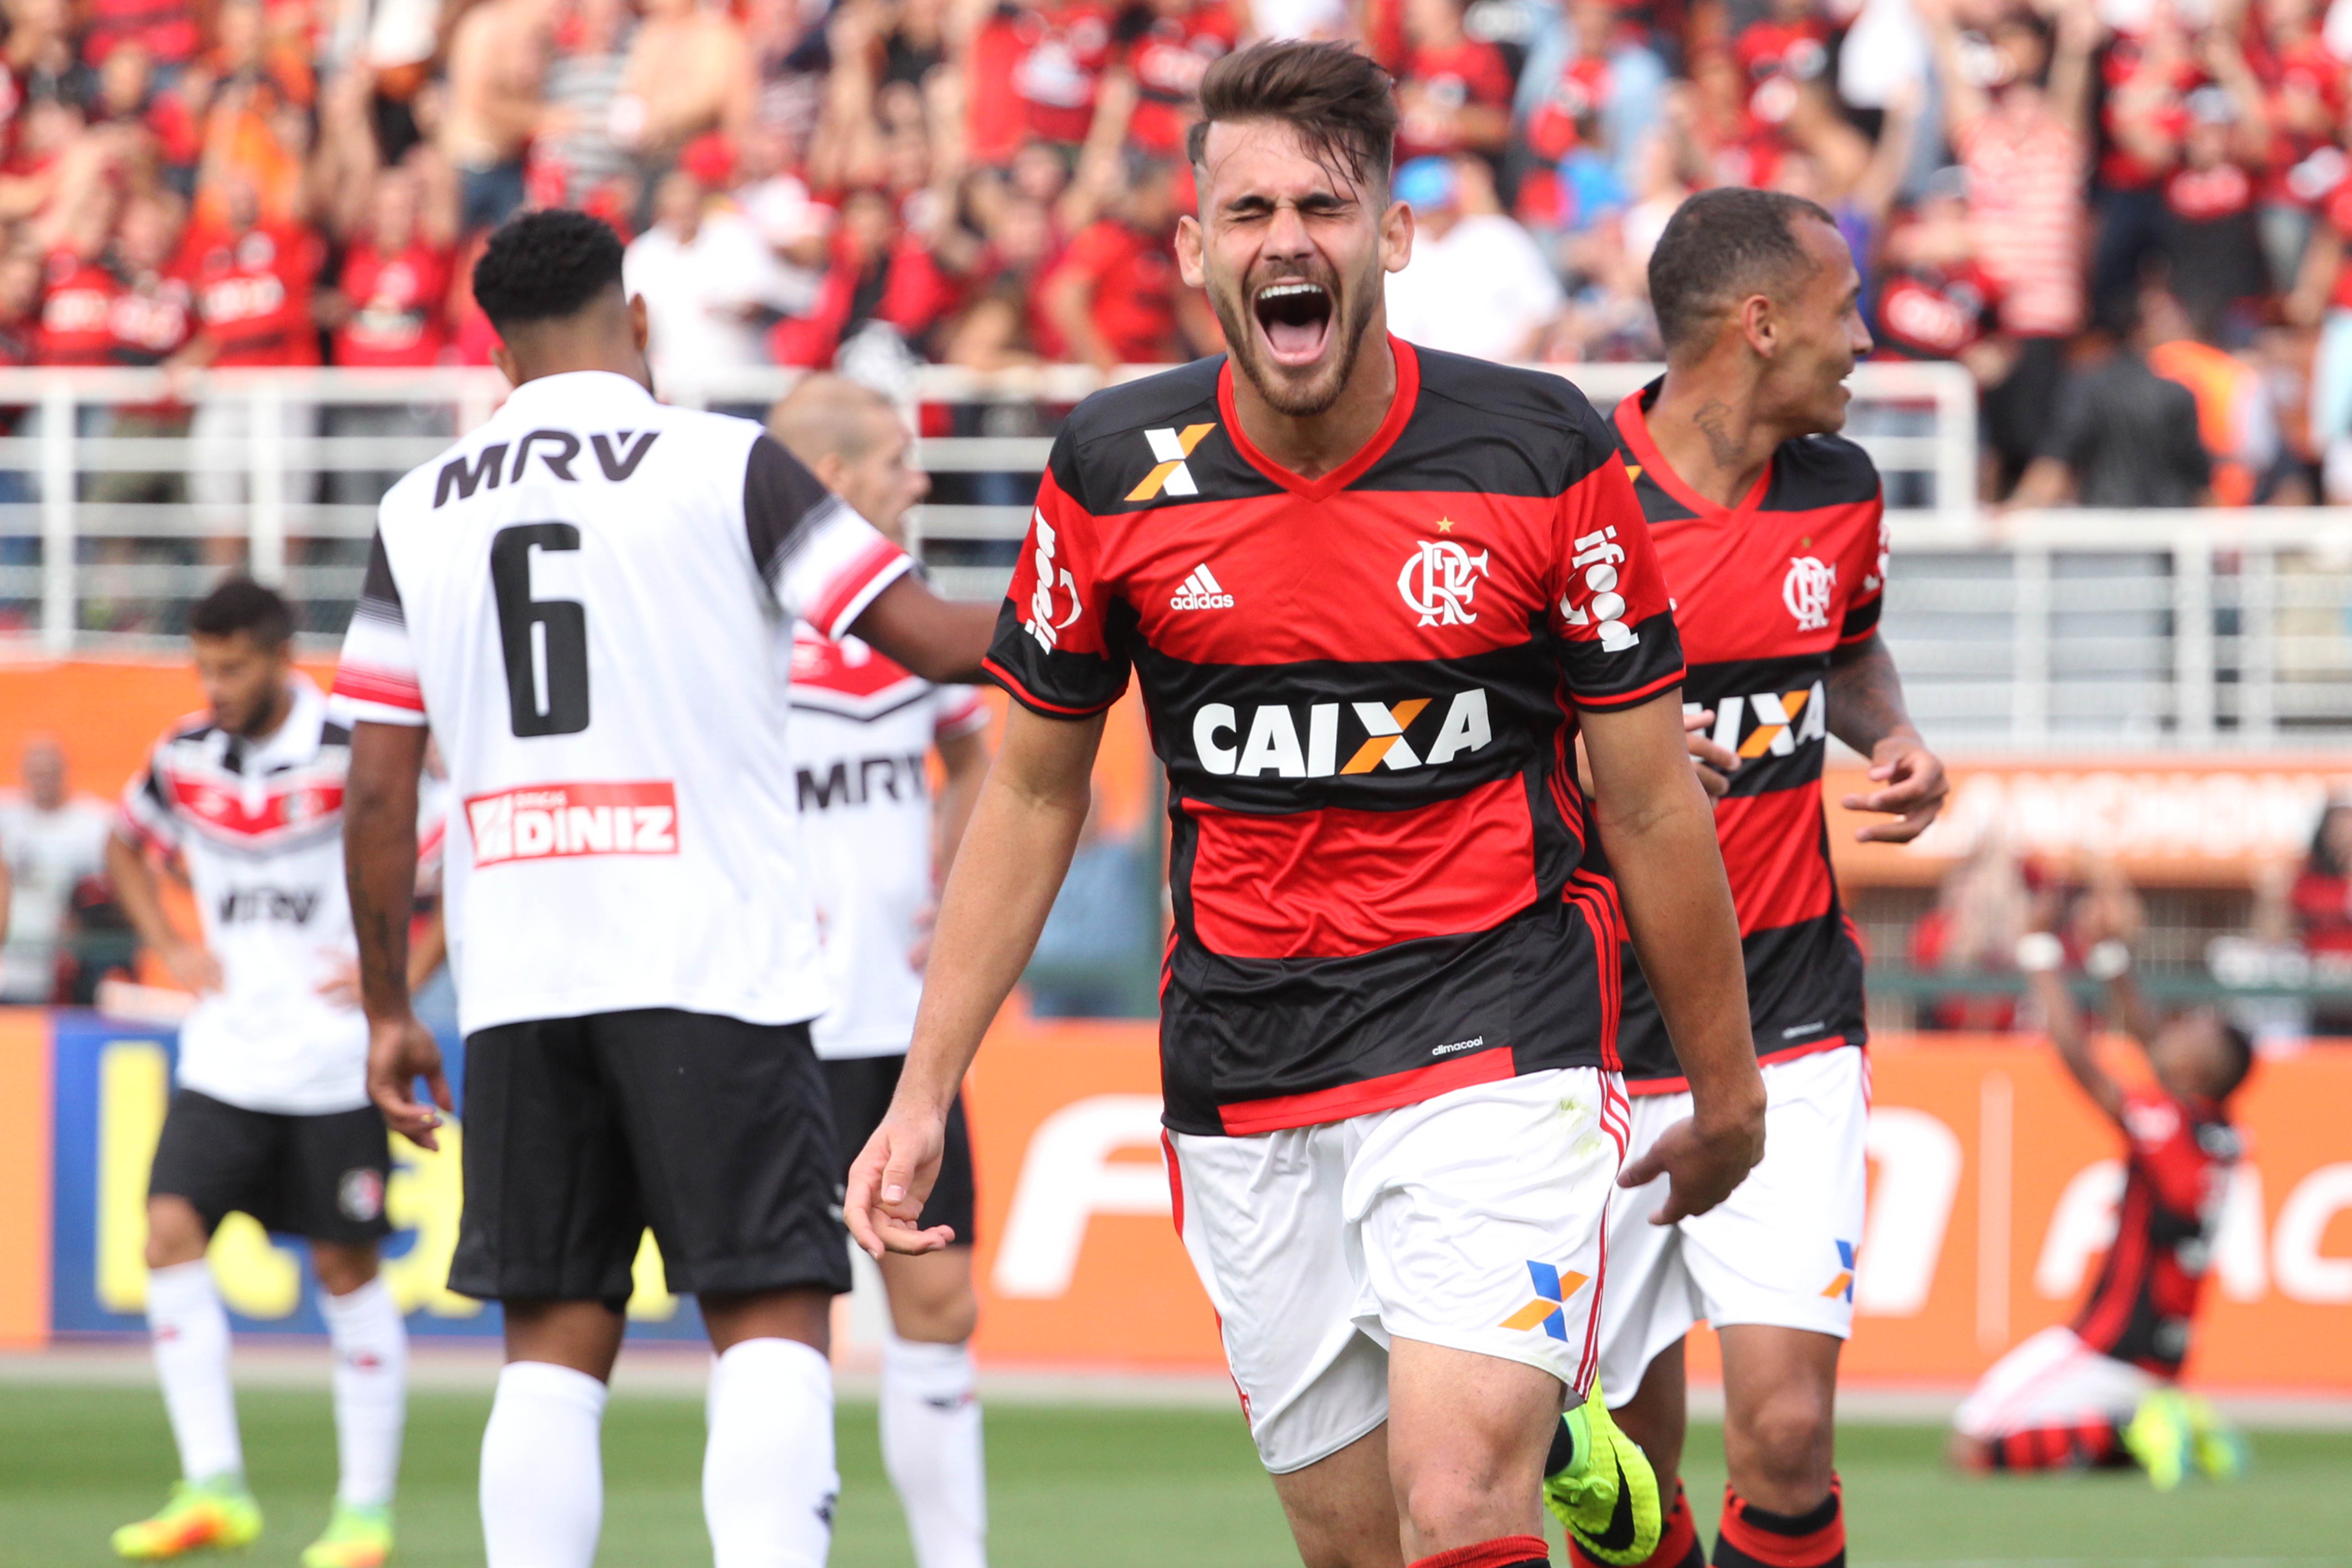 Gilvan de Souza/Flamengo/Divulgação